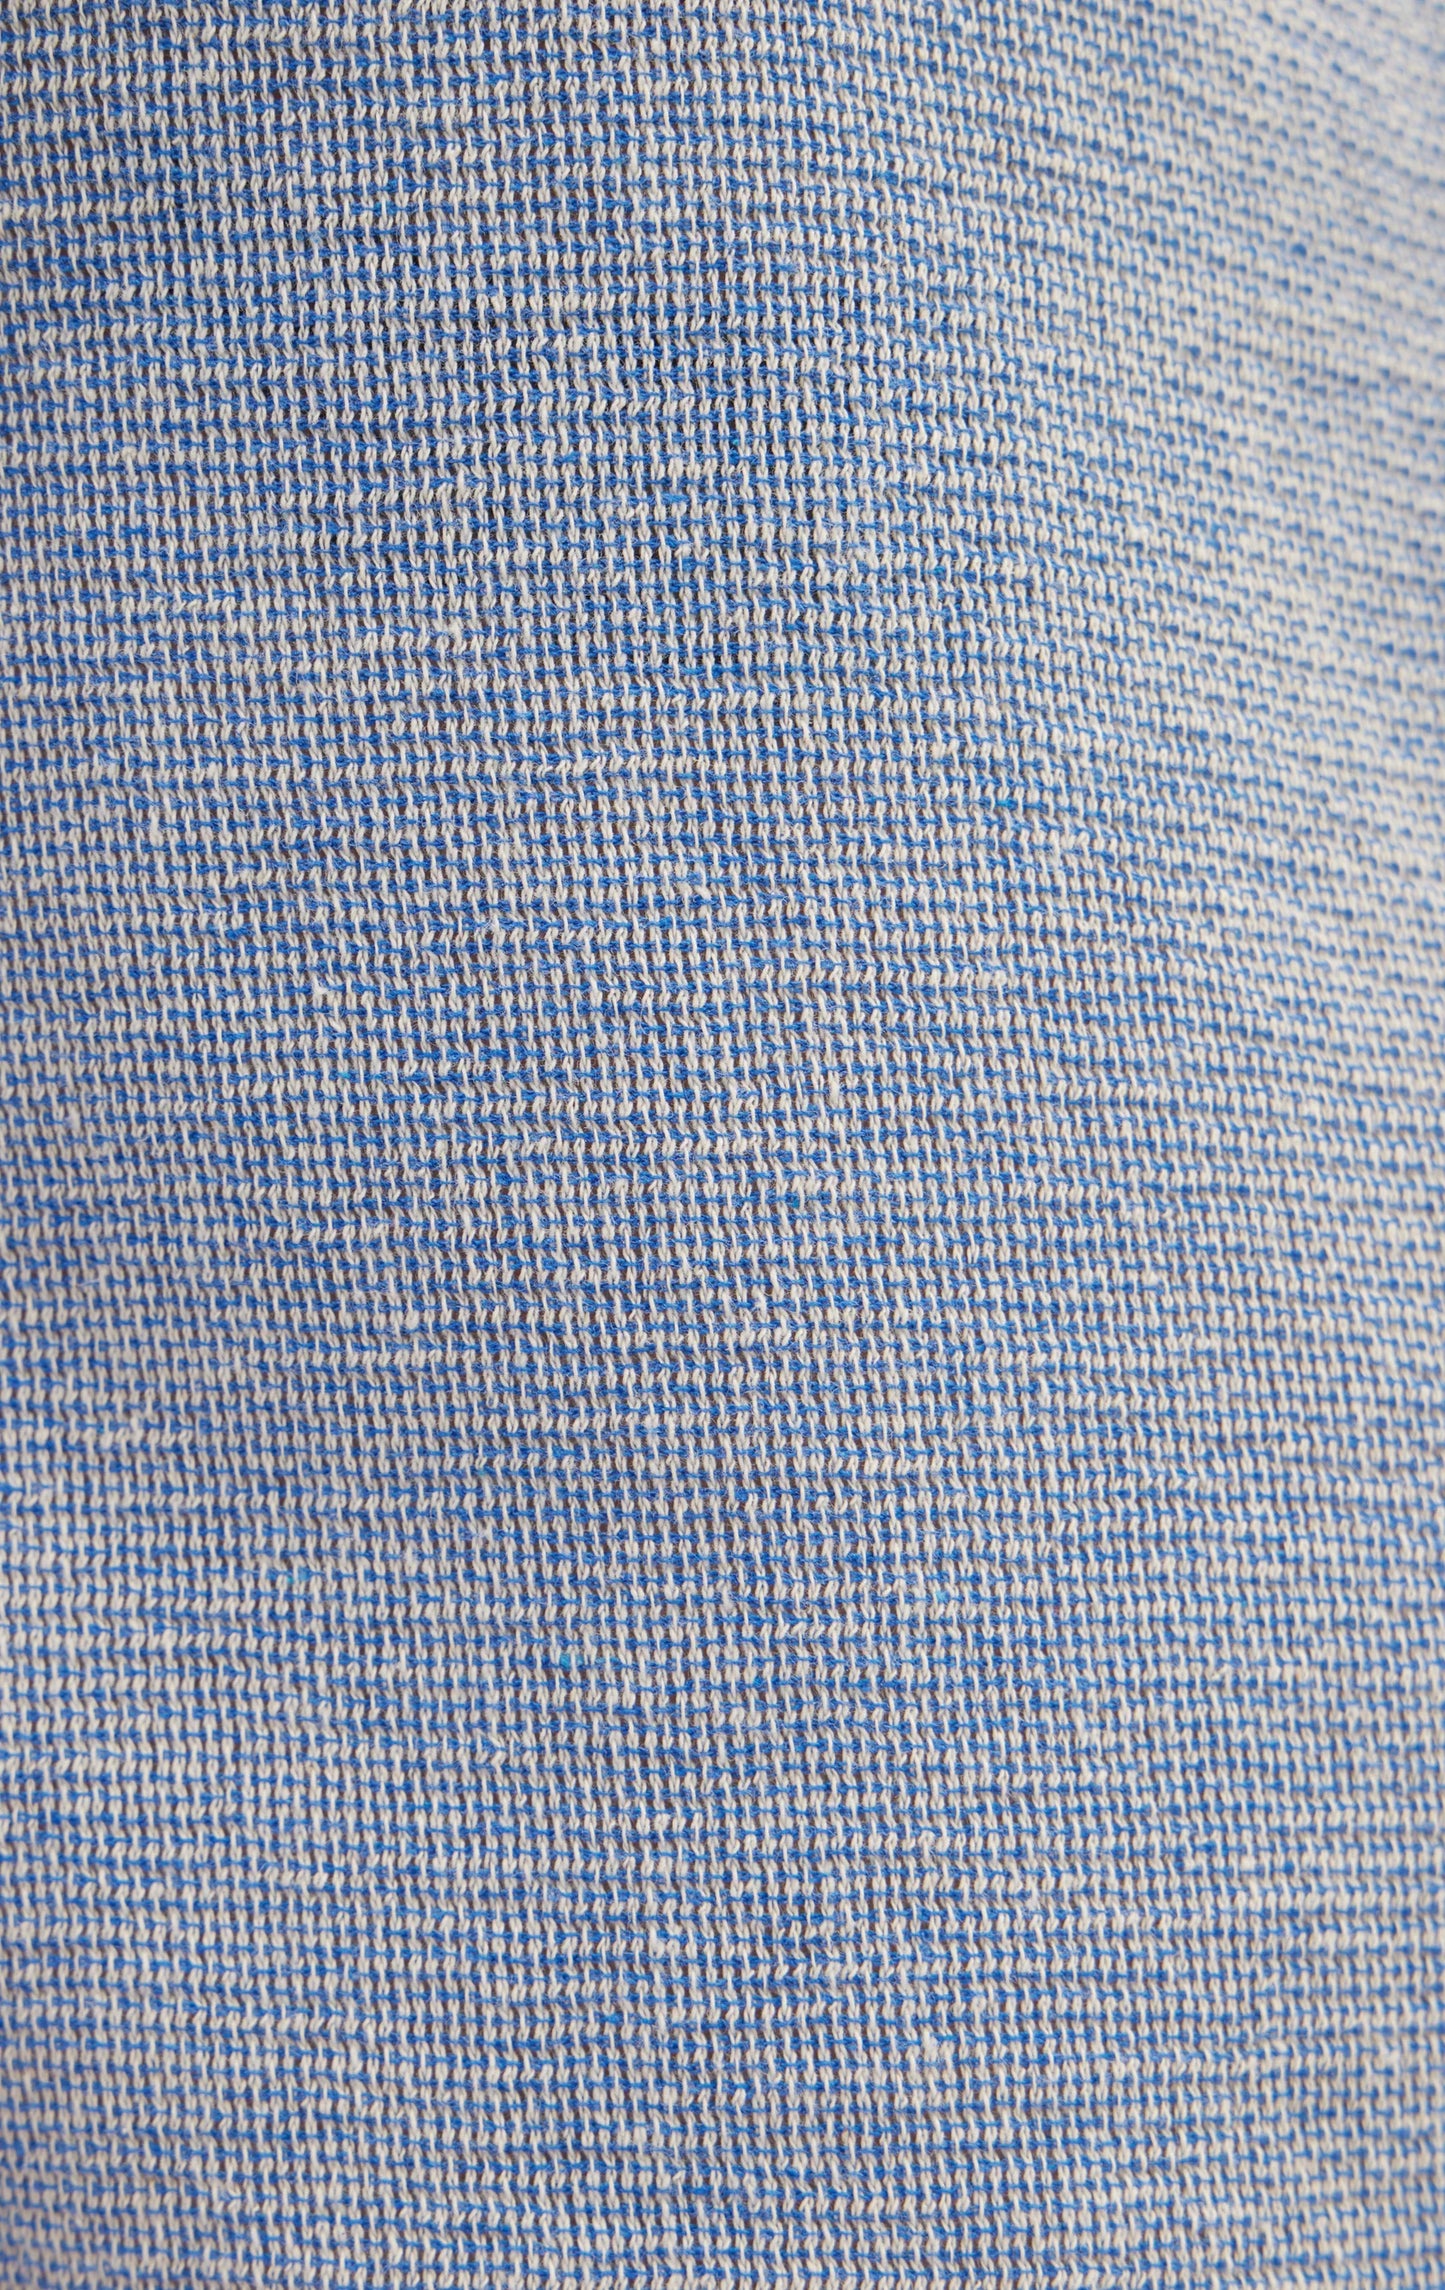 Blue Shirt Knit